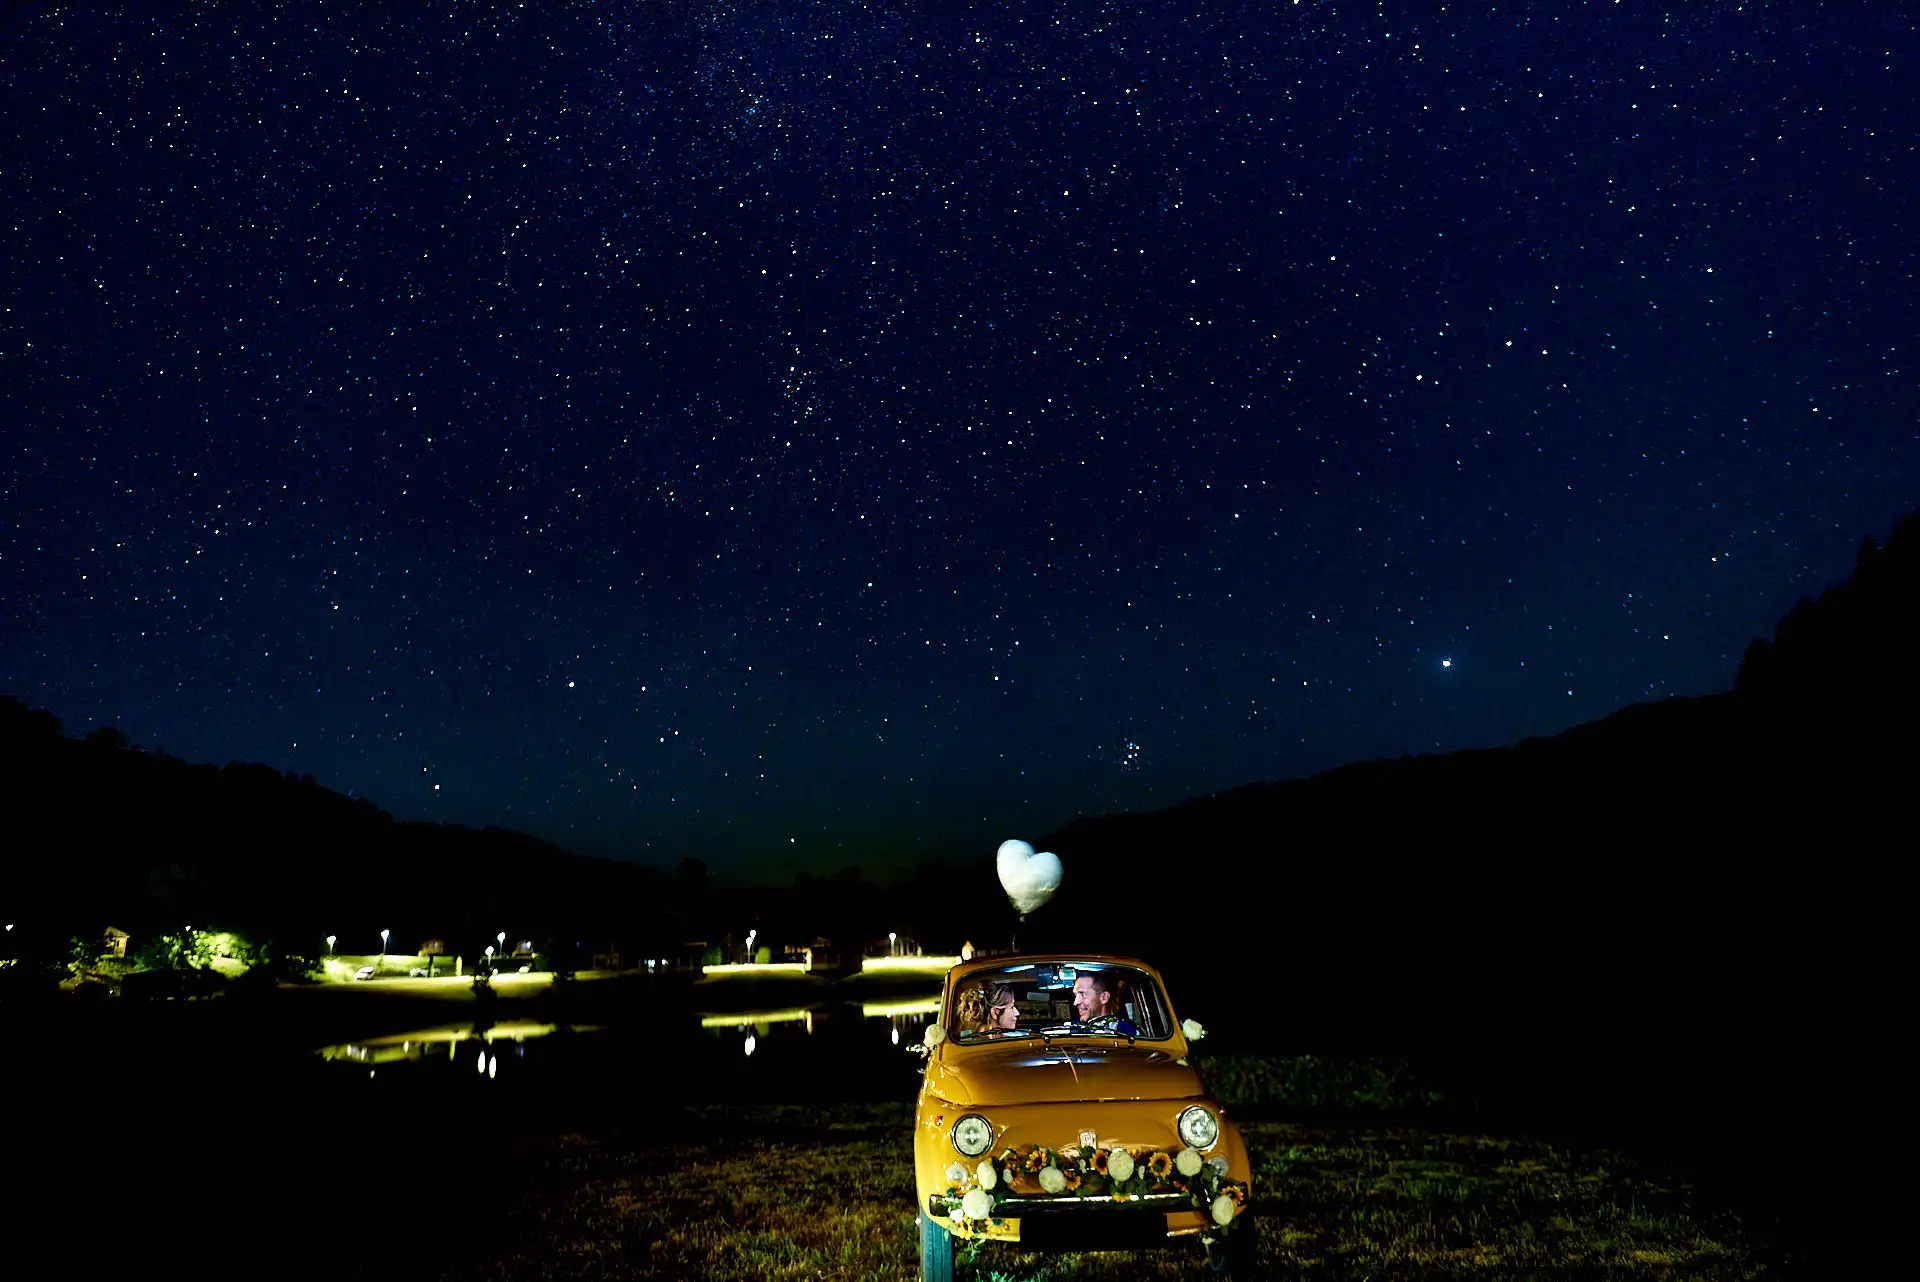 recherche photographe de mariage - photo de nuit sous les étoiles séance couple mariage auvergne rhône alpes